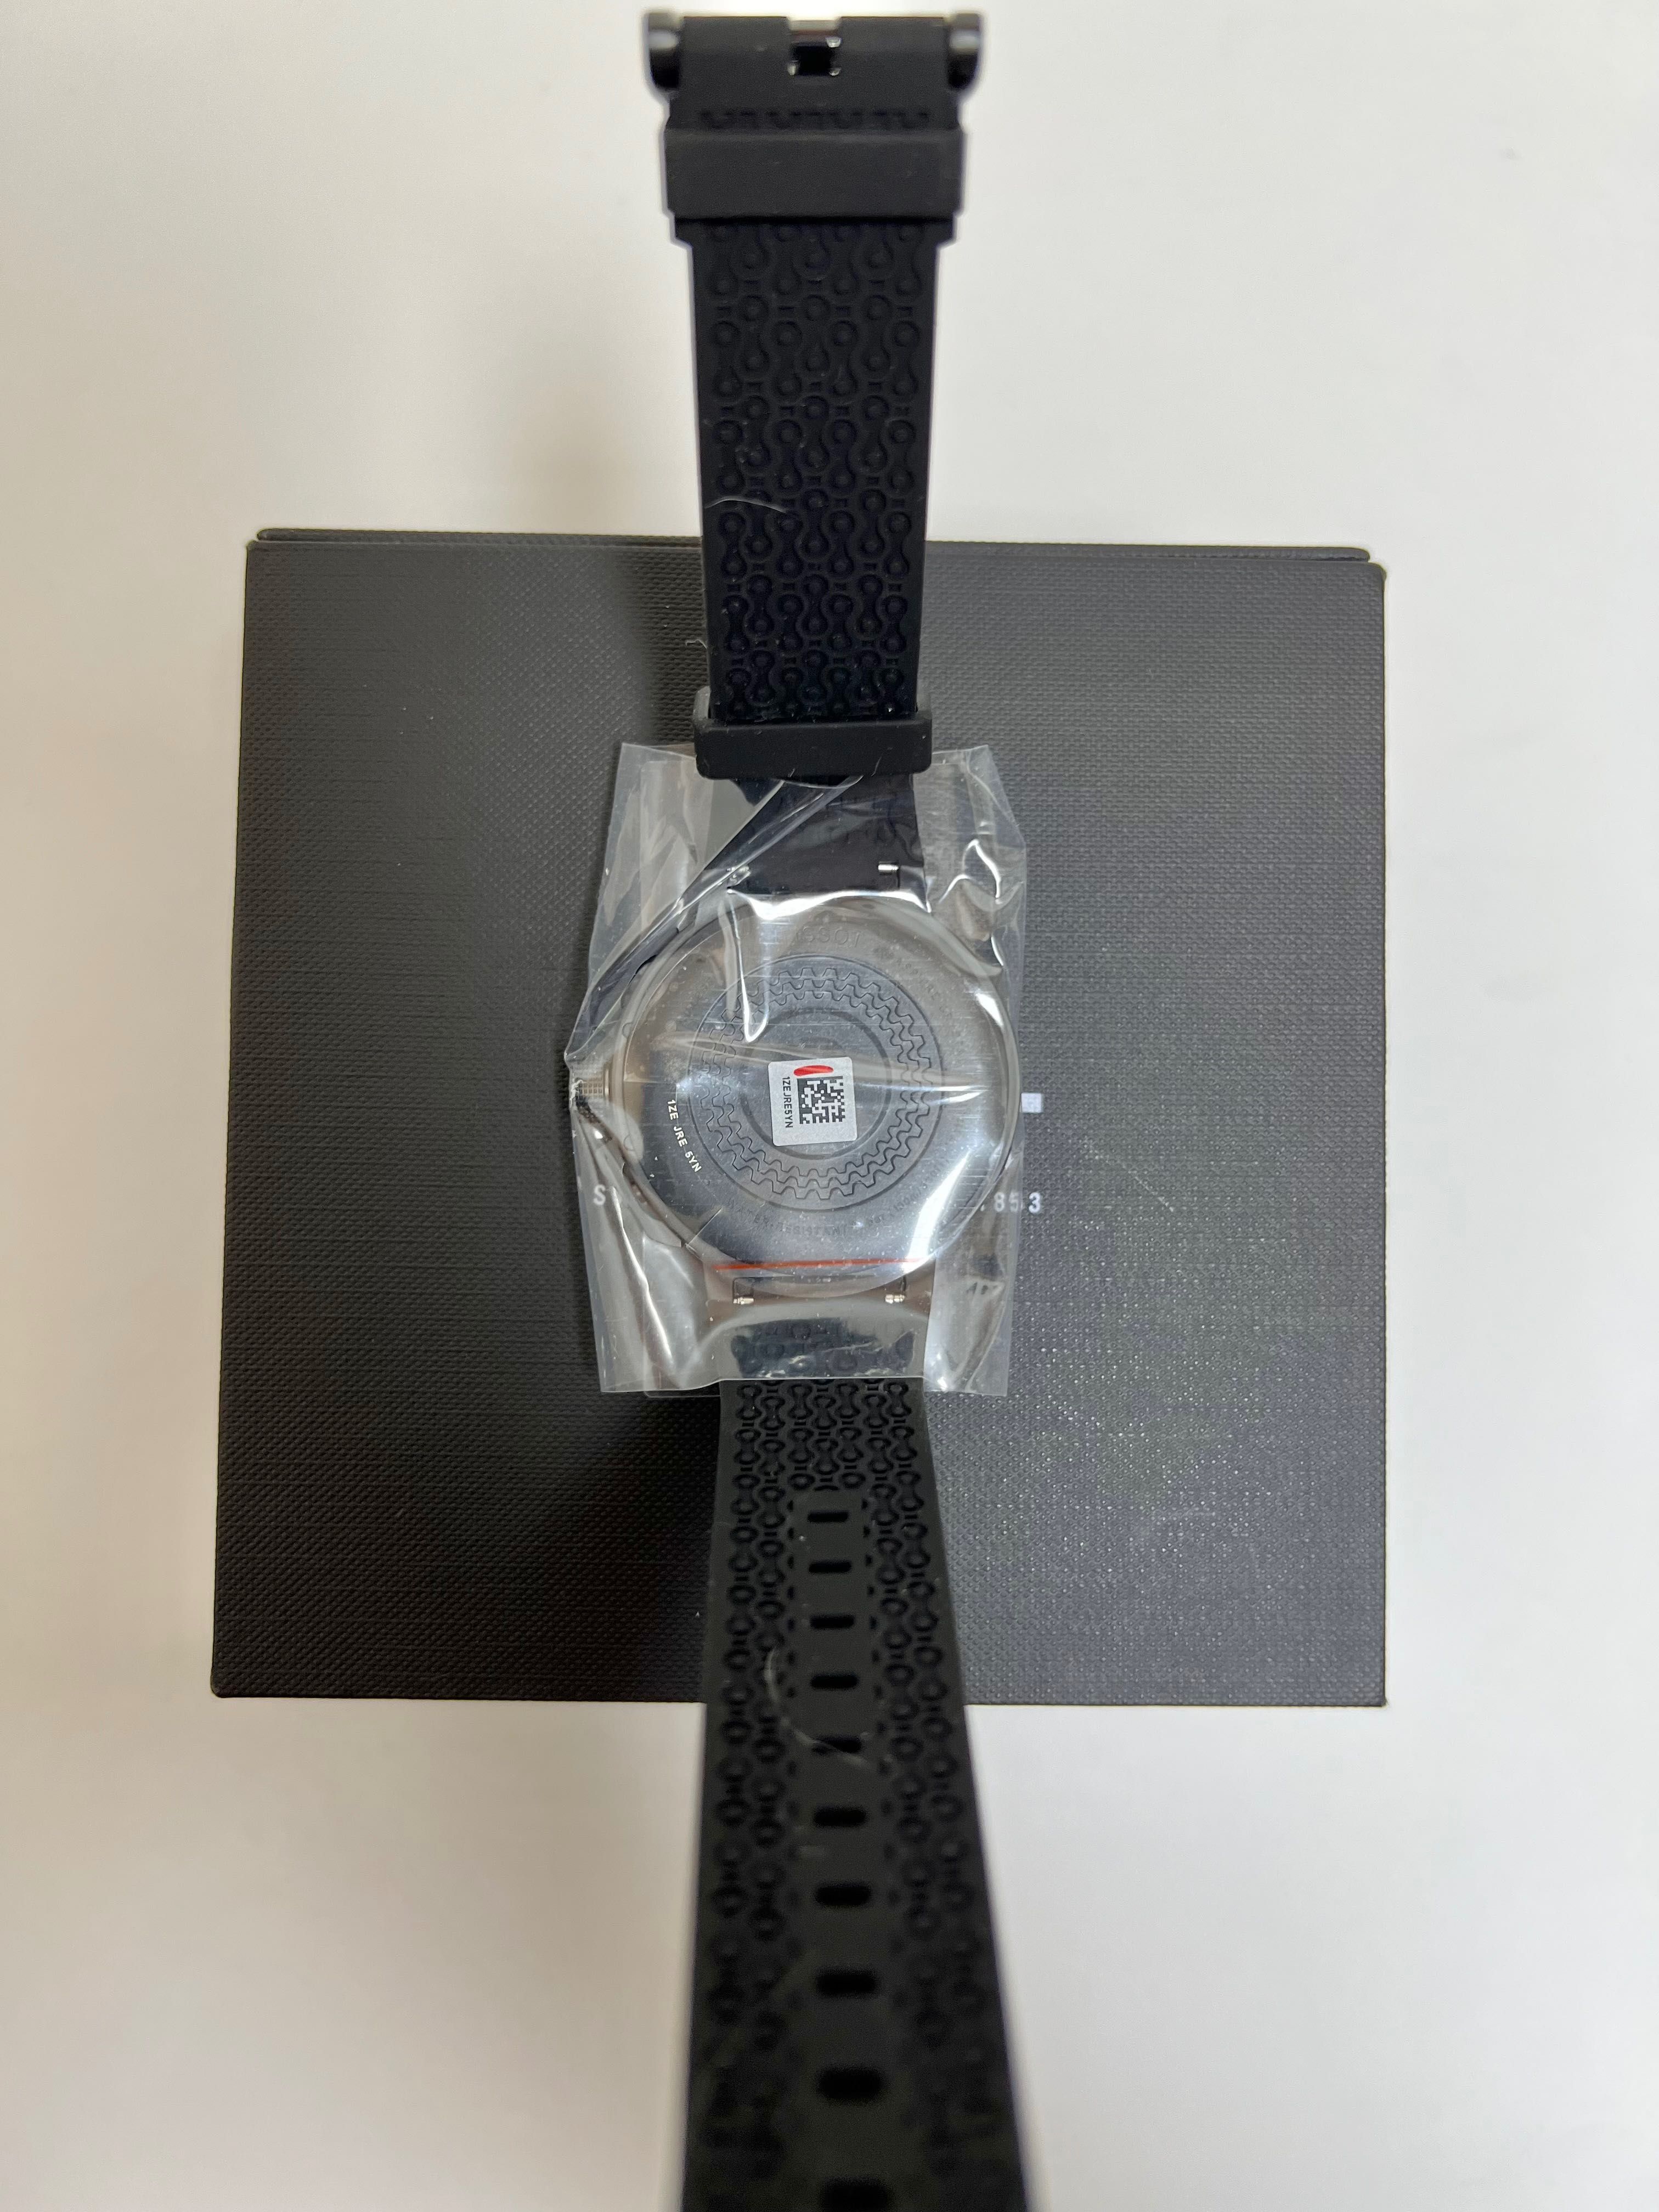 Оригинальные Tissot T-race Chronograph новые кварцевые часы Швейцария